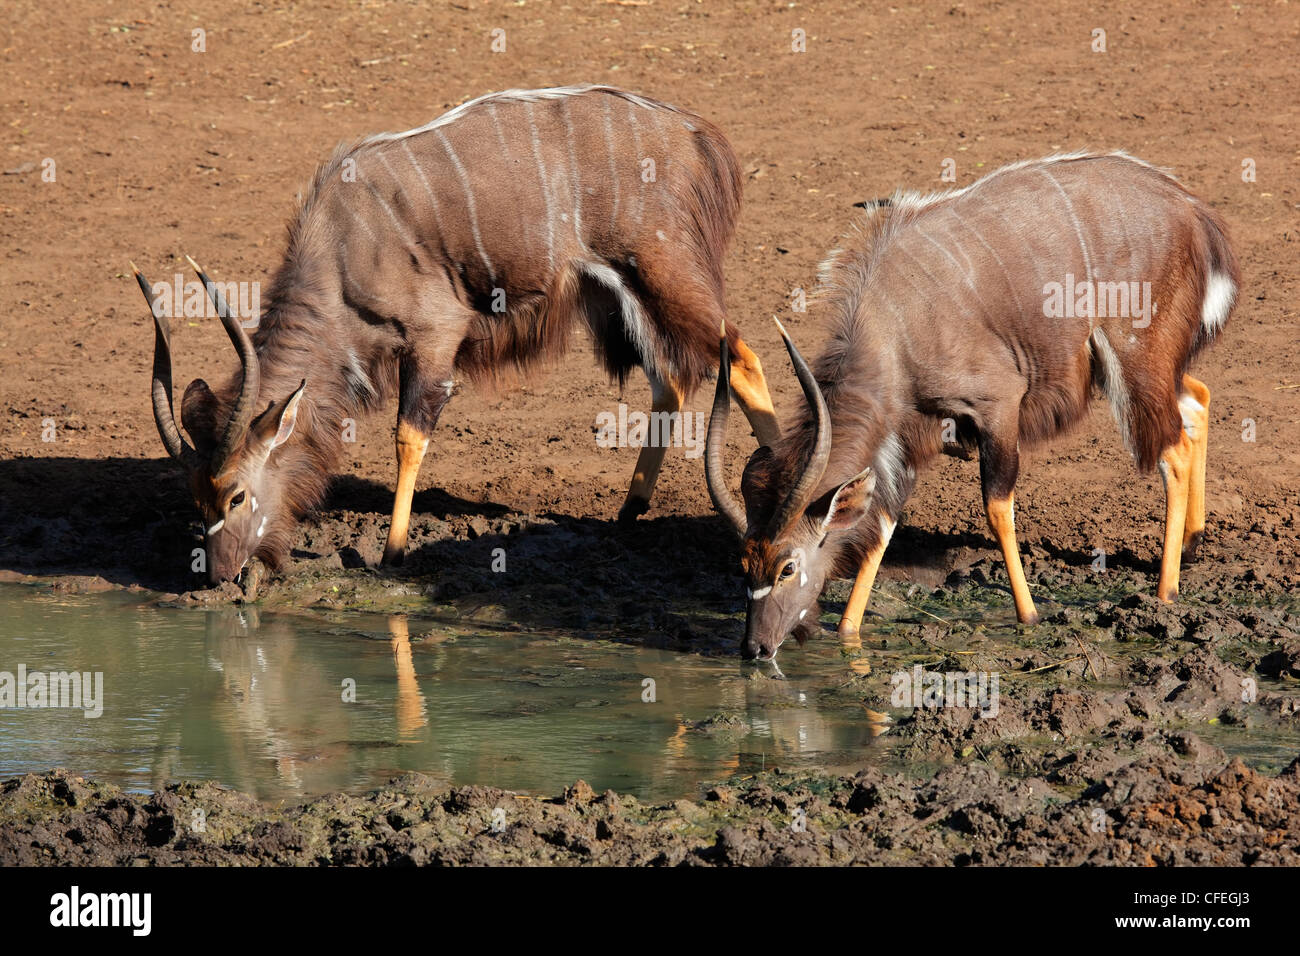 Two male Nyala antelopes (Tragelaphus angasii) drinking water, Mkuze game reserve, South Africa Stock Photo